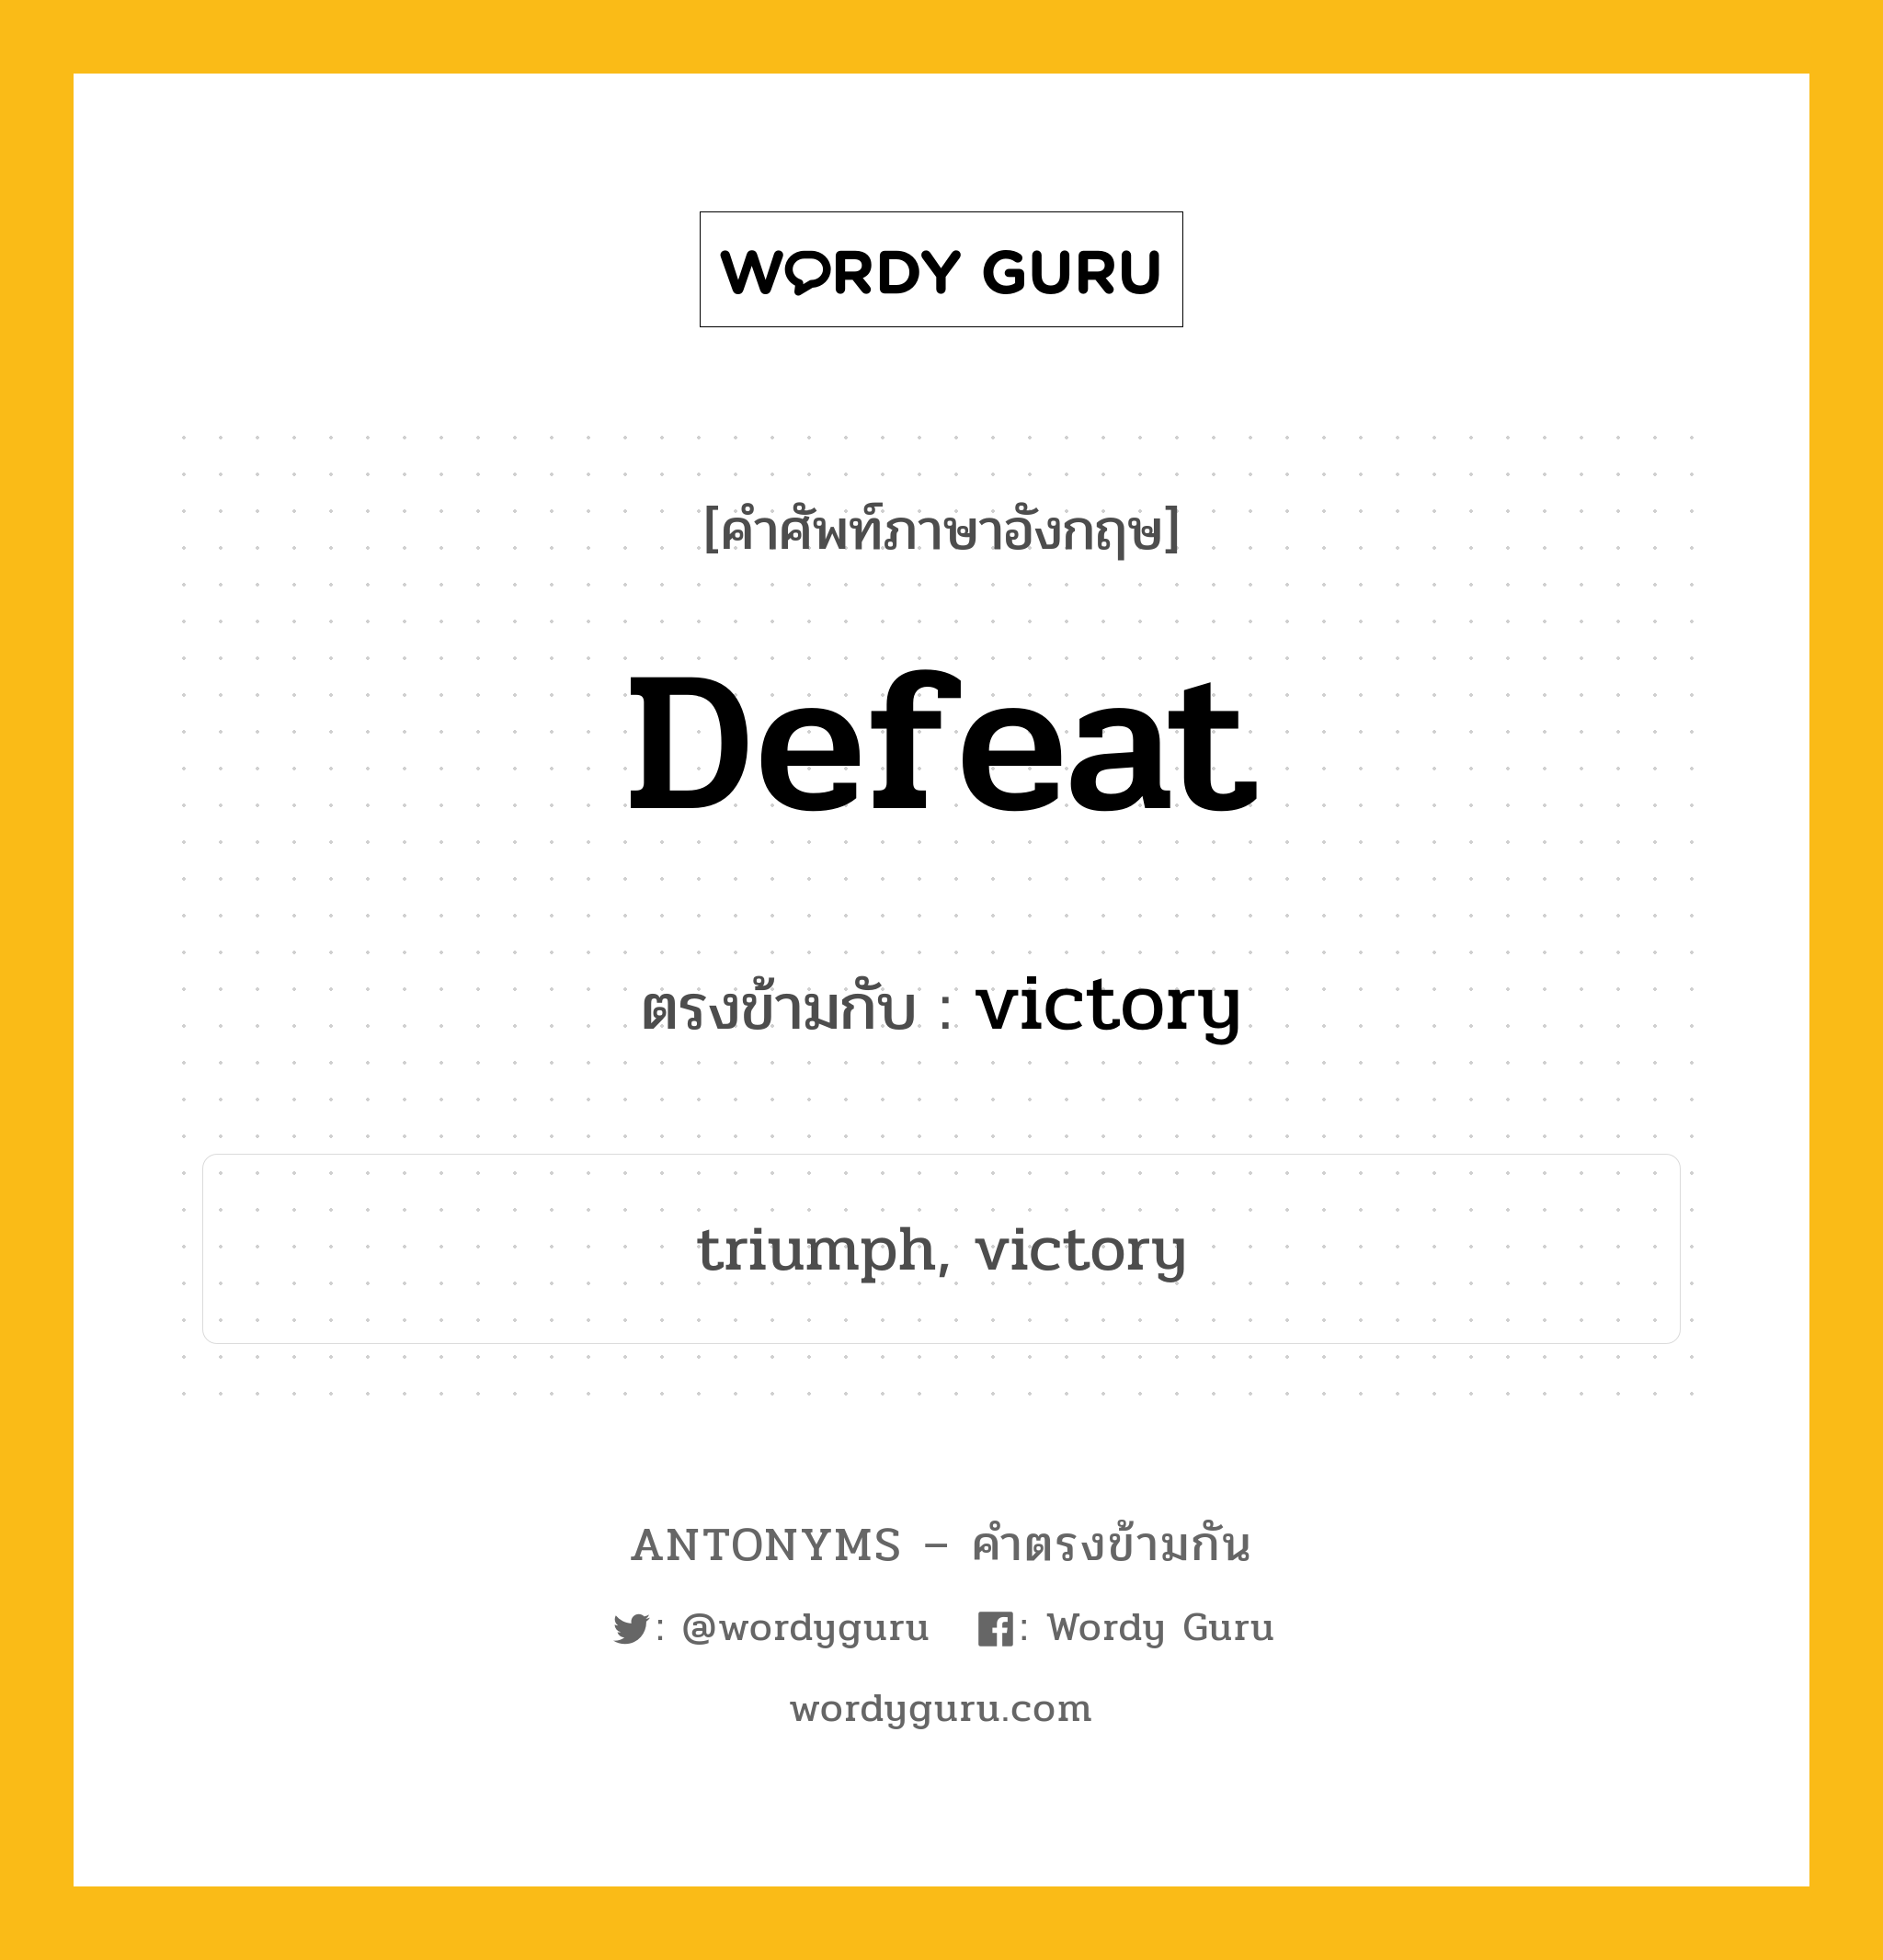 defeat เป็นคำตรงข้ามกับคำไหนบ้าง?, คำศัพท์ภาษาอังกฤษ defeat ตรงข้ามกับ victory หมวด victory